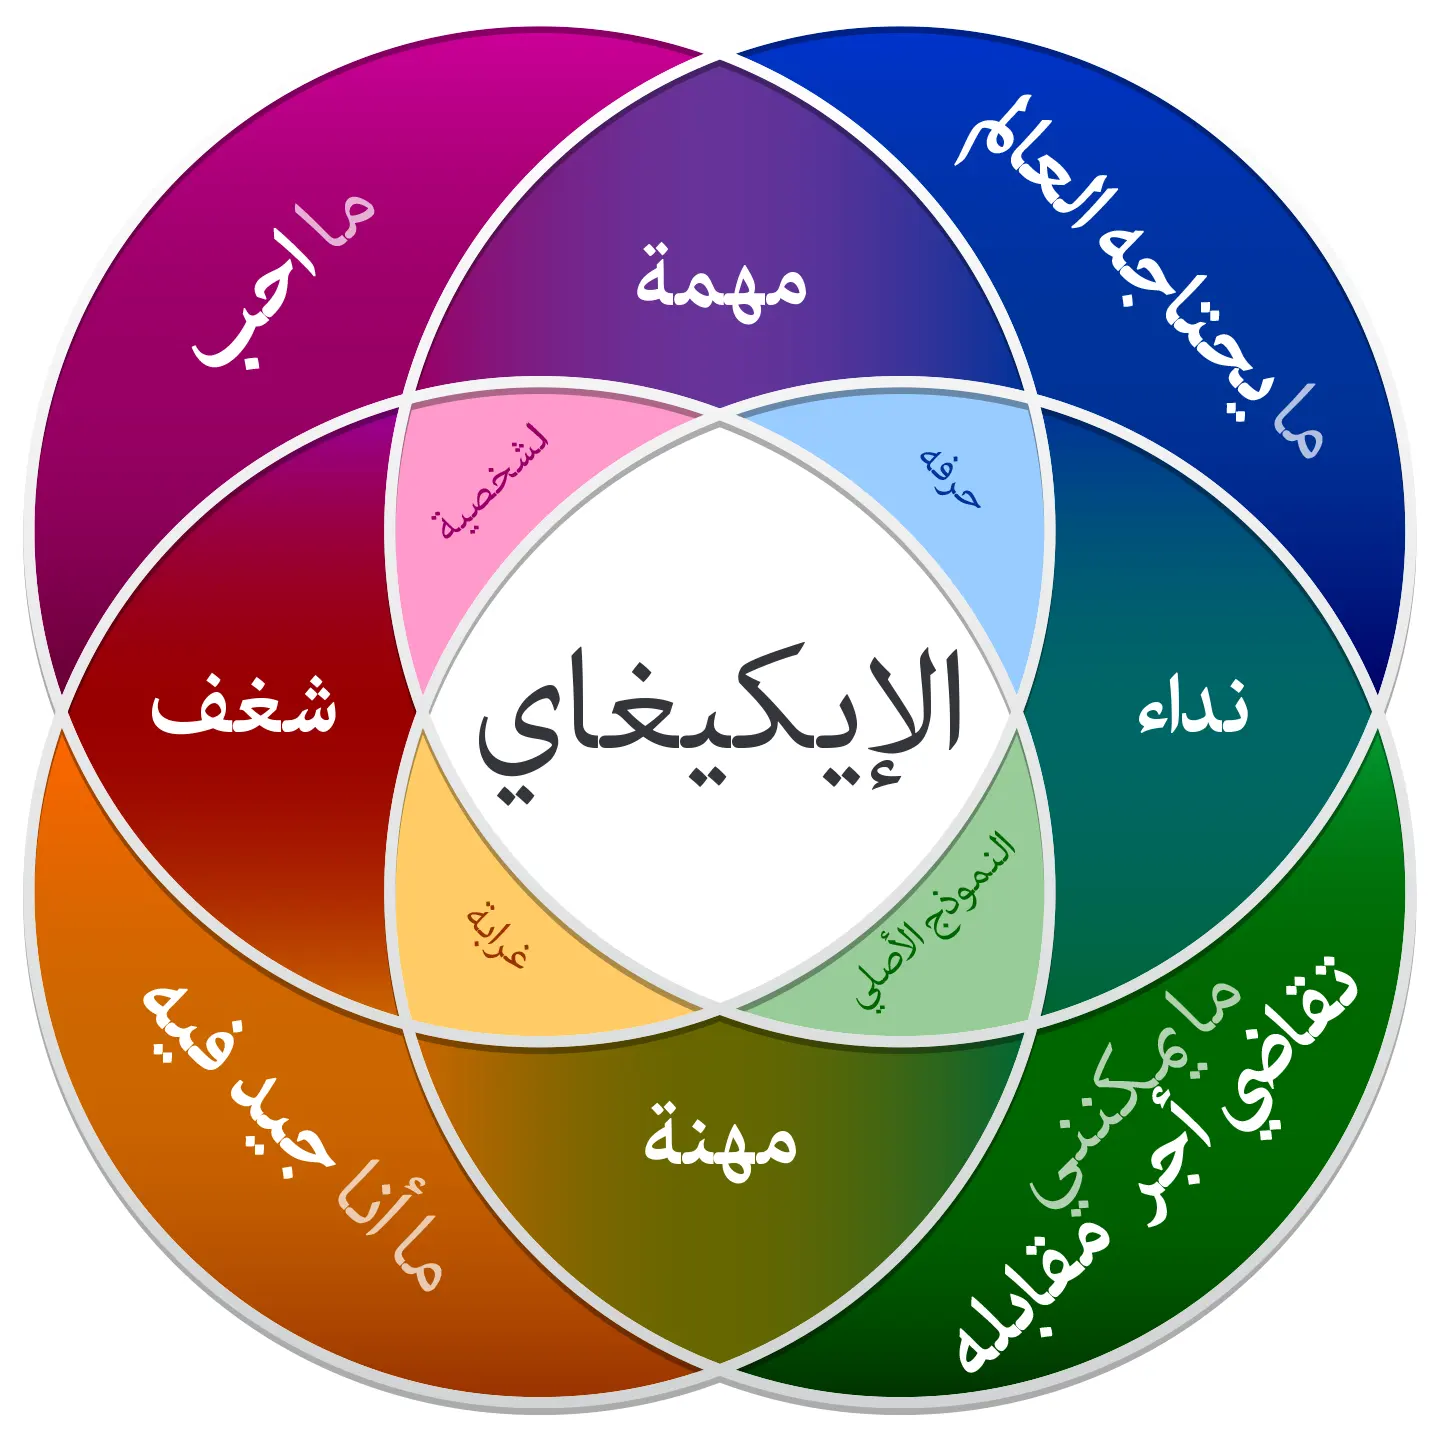 الإيكيغاي معنى في اللغة العربية